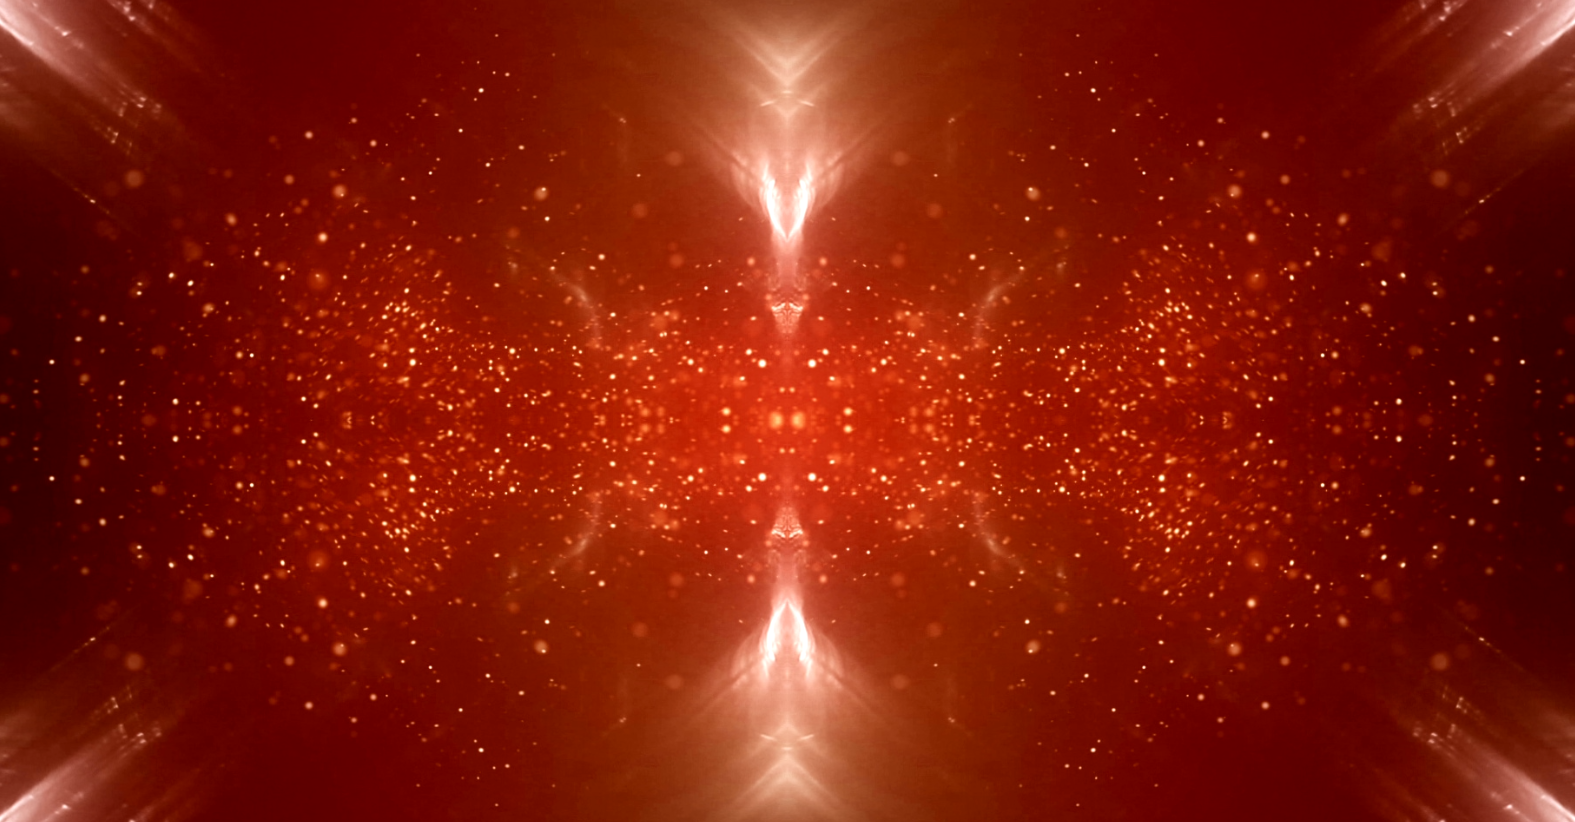 红色粒子效果几何对称演绎万花筒视觉效果唯美舞台特效视频素材